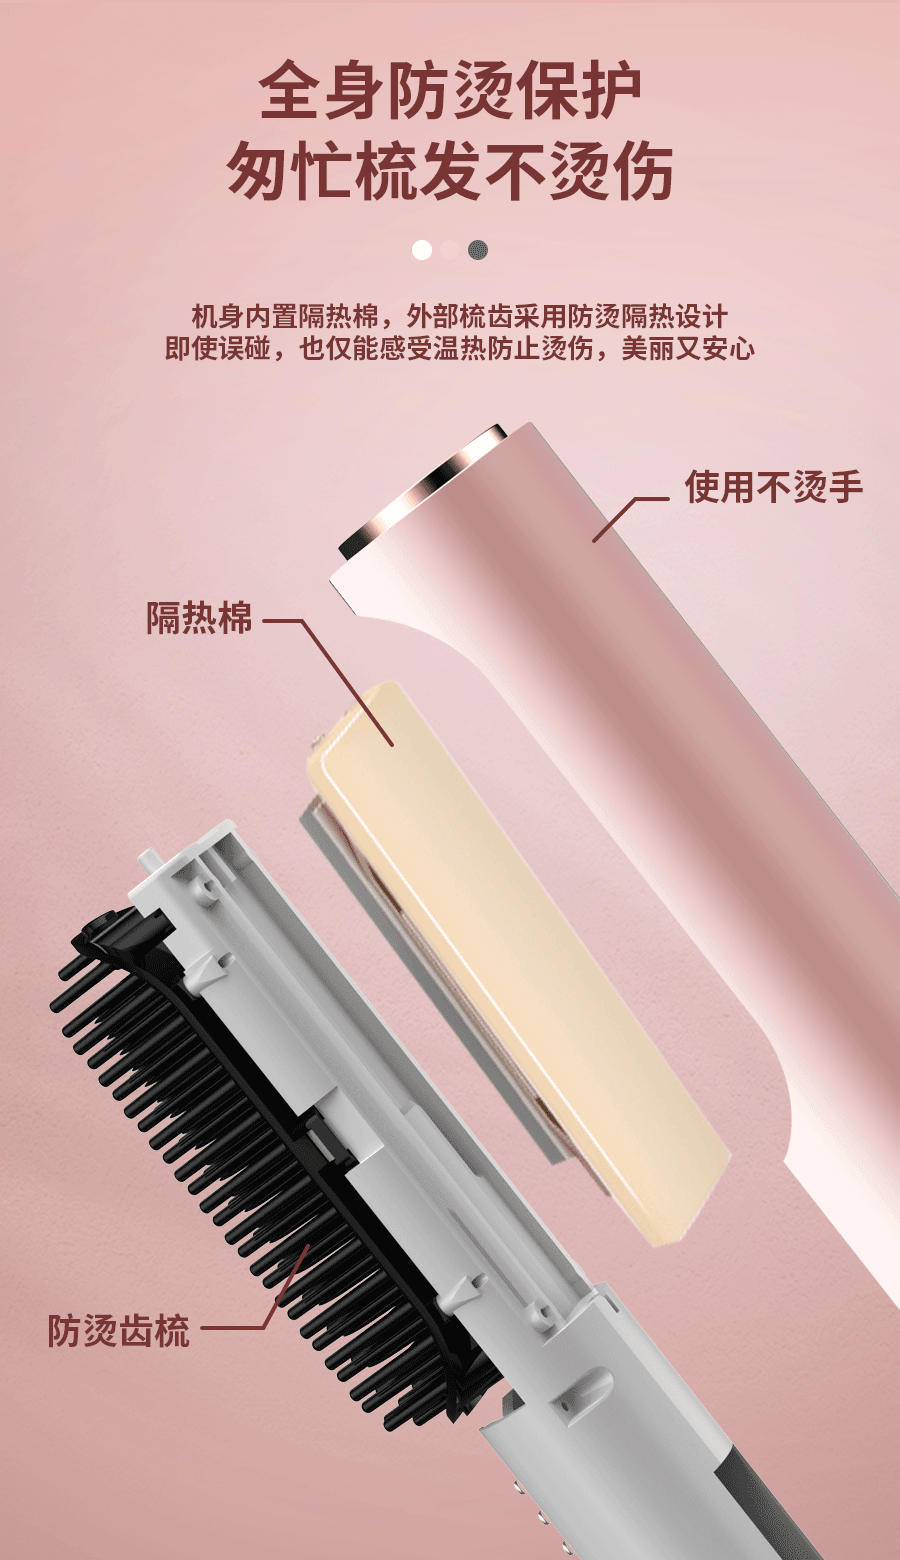 中国 SNewGee十六纪 负离子无线直发梳直卷两用 粉色 1件